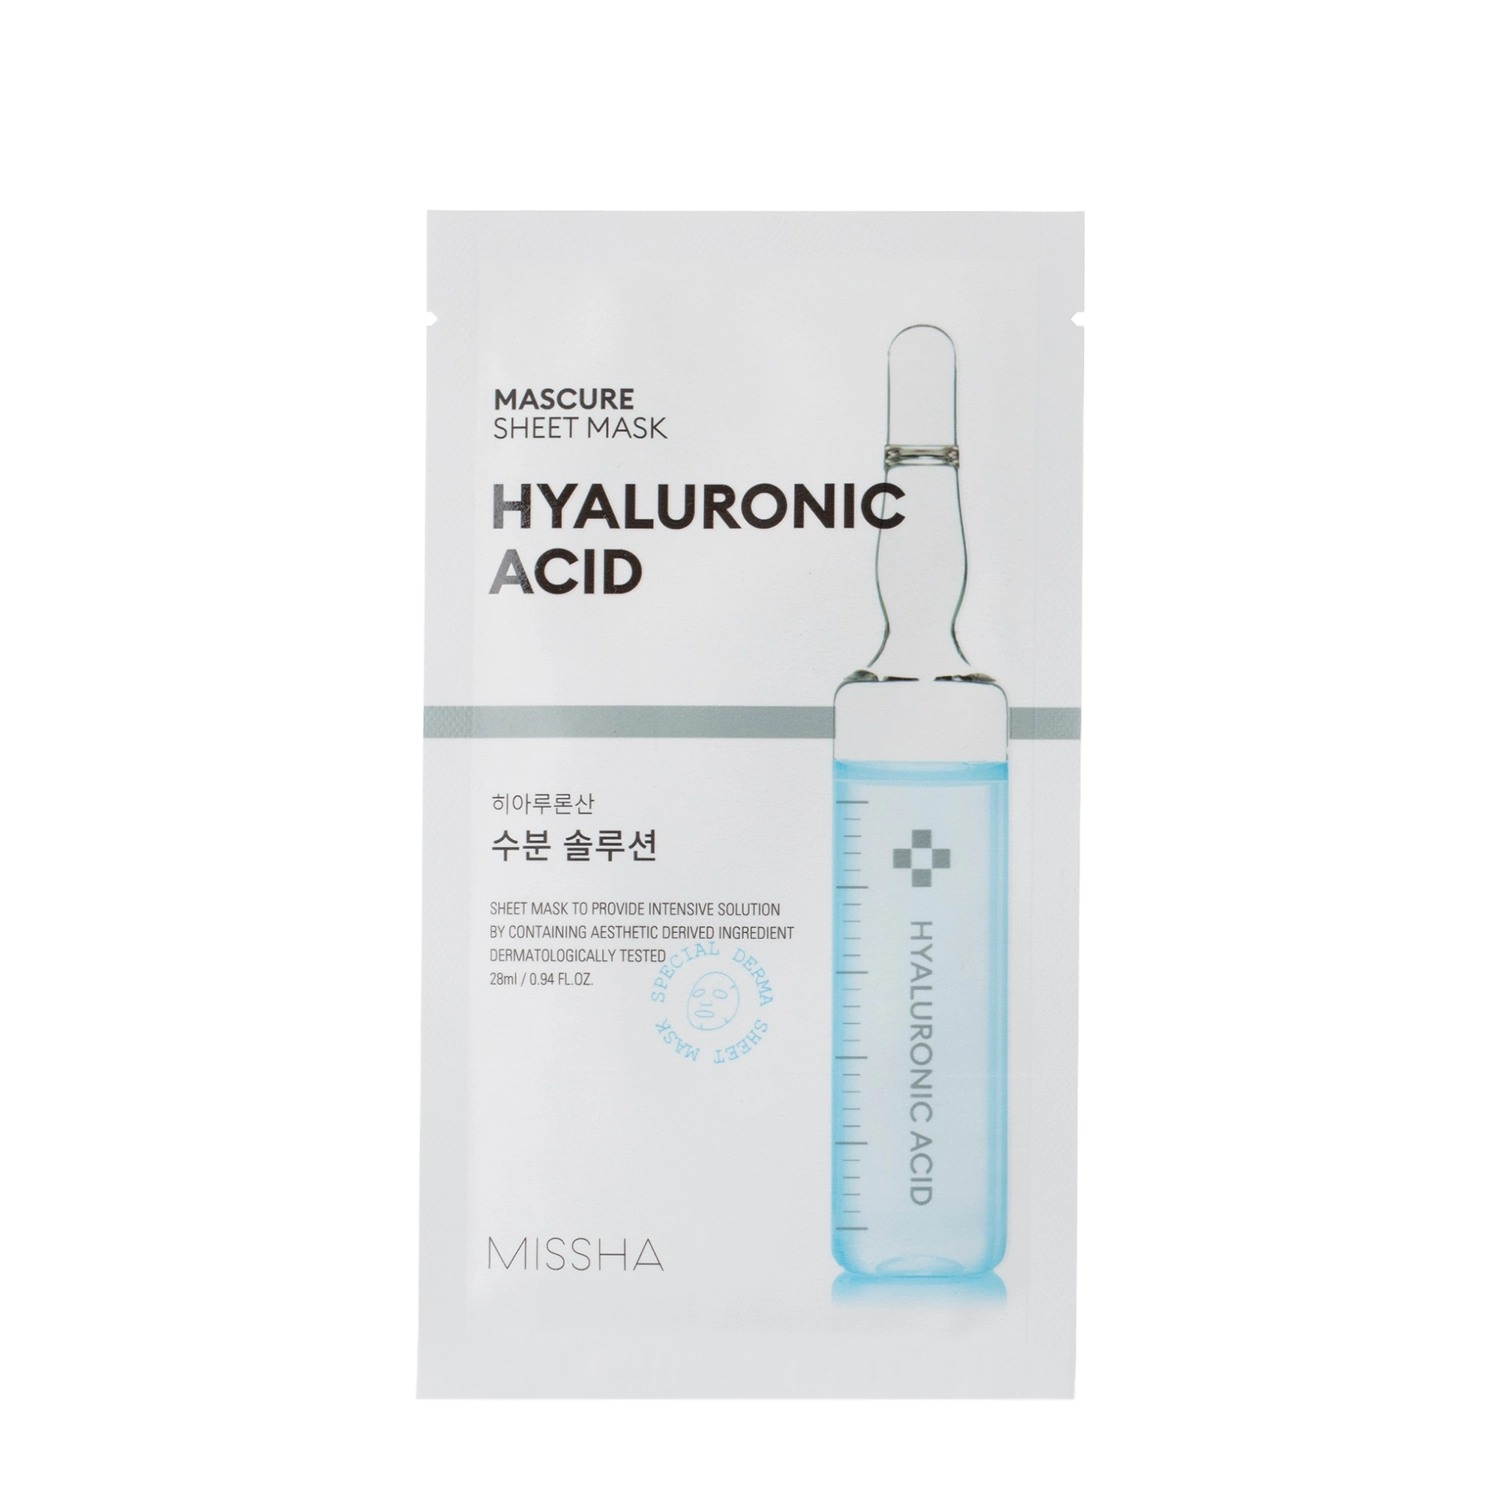 Missha - Mascure Hyaluronic Acid Sheet Mask - Hydratační plátýnková maska - 28 ml